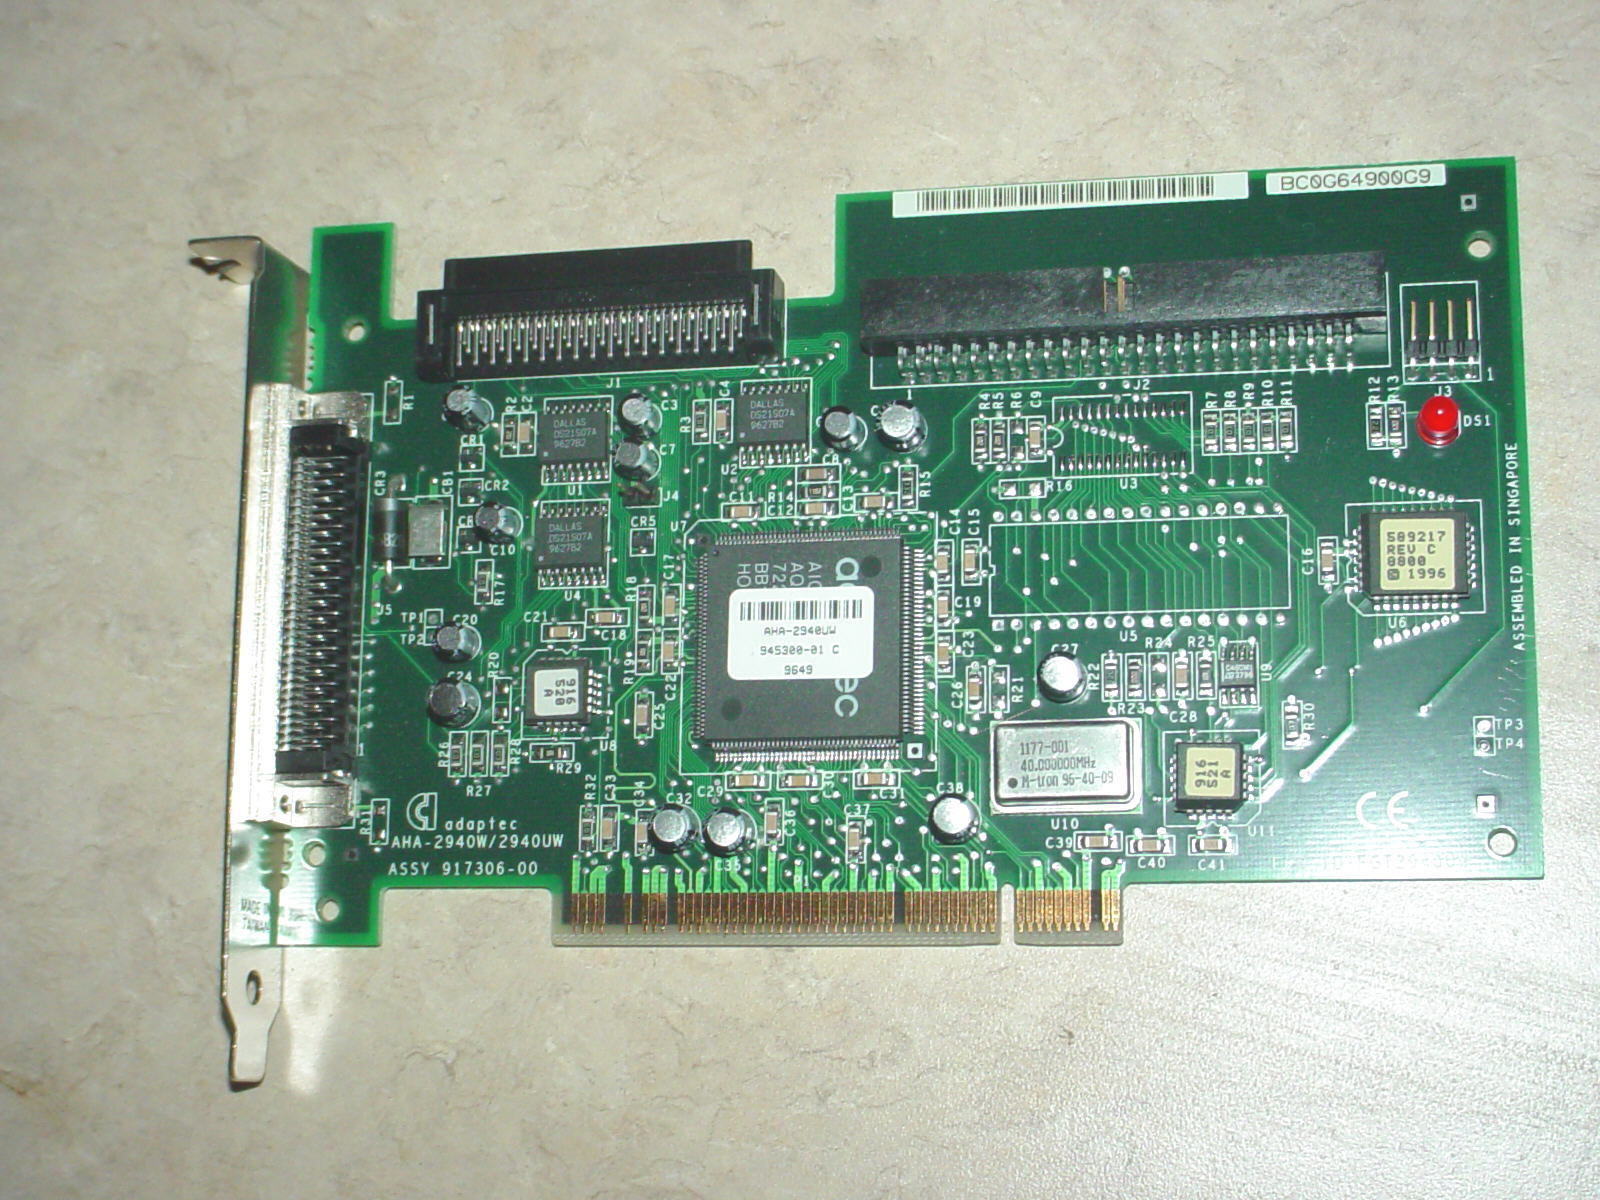 ADAPTEC AHA-2940W PCI SLOT SCSI CONTROLLER 917306-00